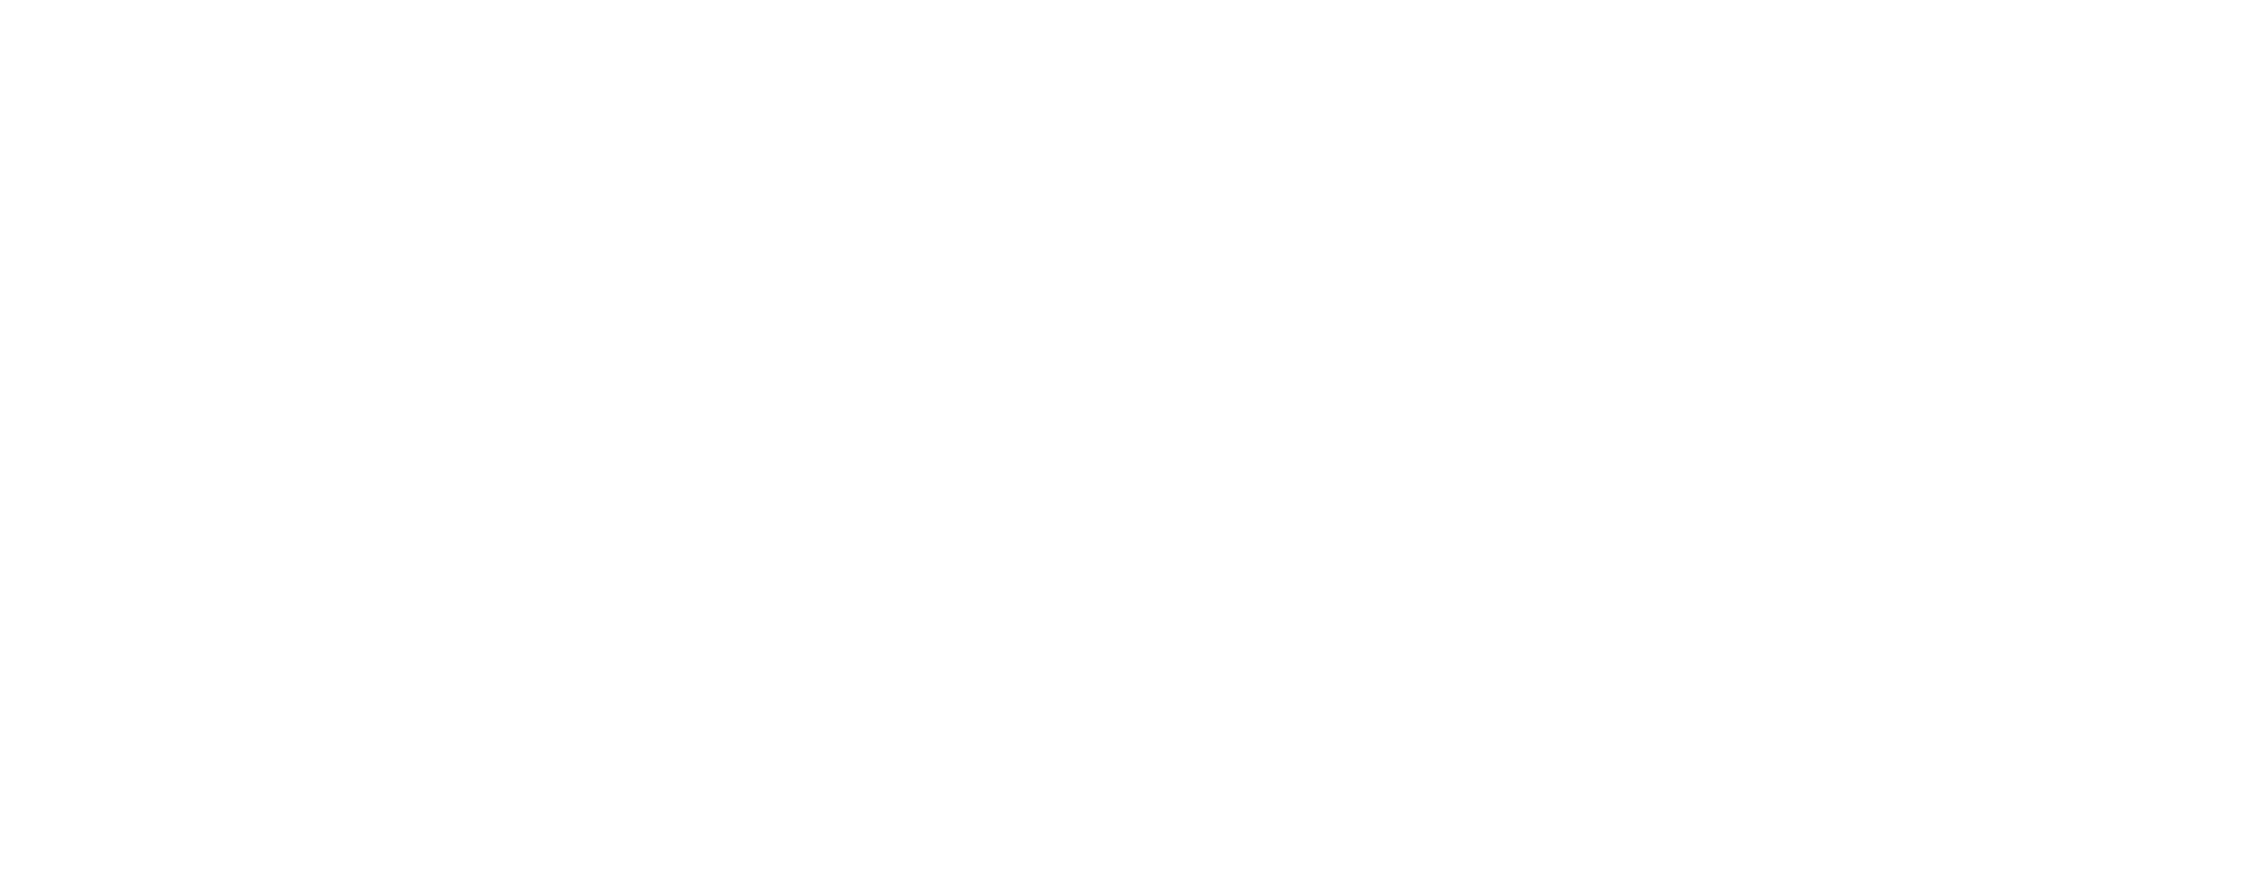 Hallings Frisörsalong Norrköping: Logga